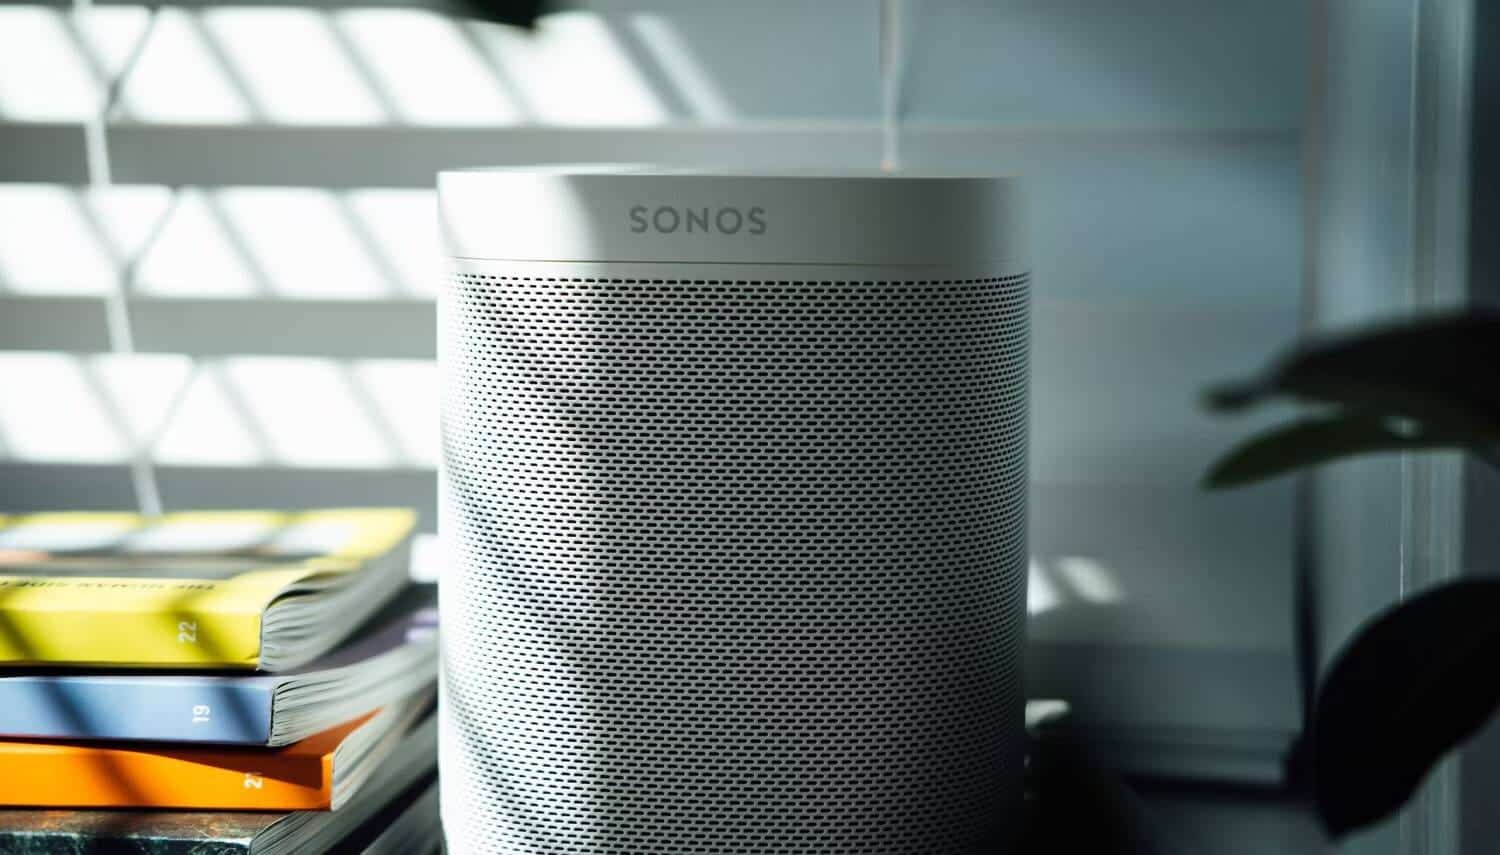 تحليل شامل لمُنتجات Sonos: اكتشف عالم المكبرات الذكية وأنظمة الصوت المُتقدمة - المنزل الذكي